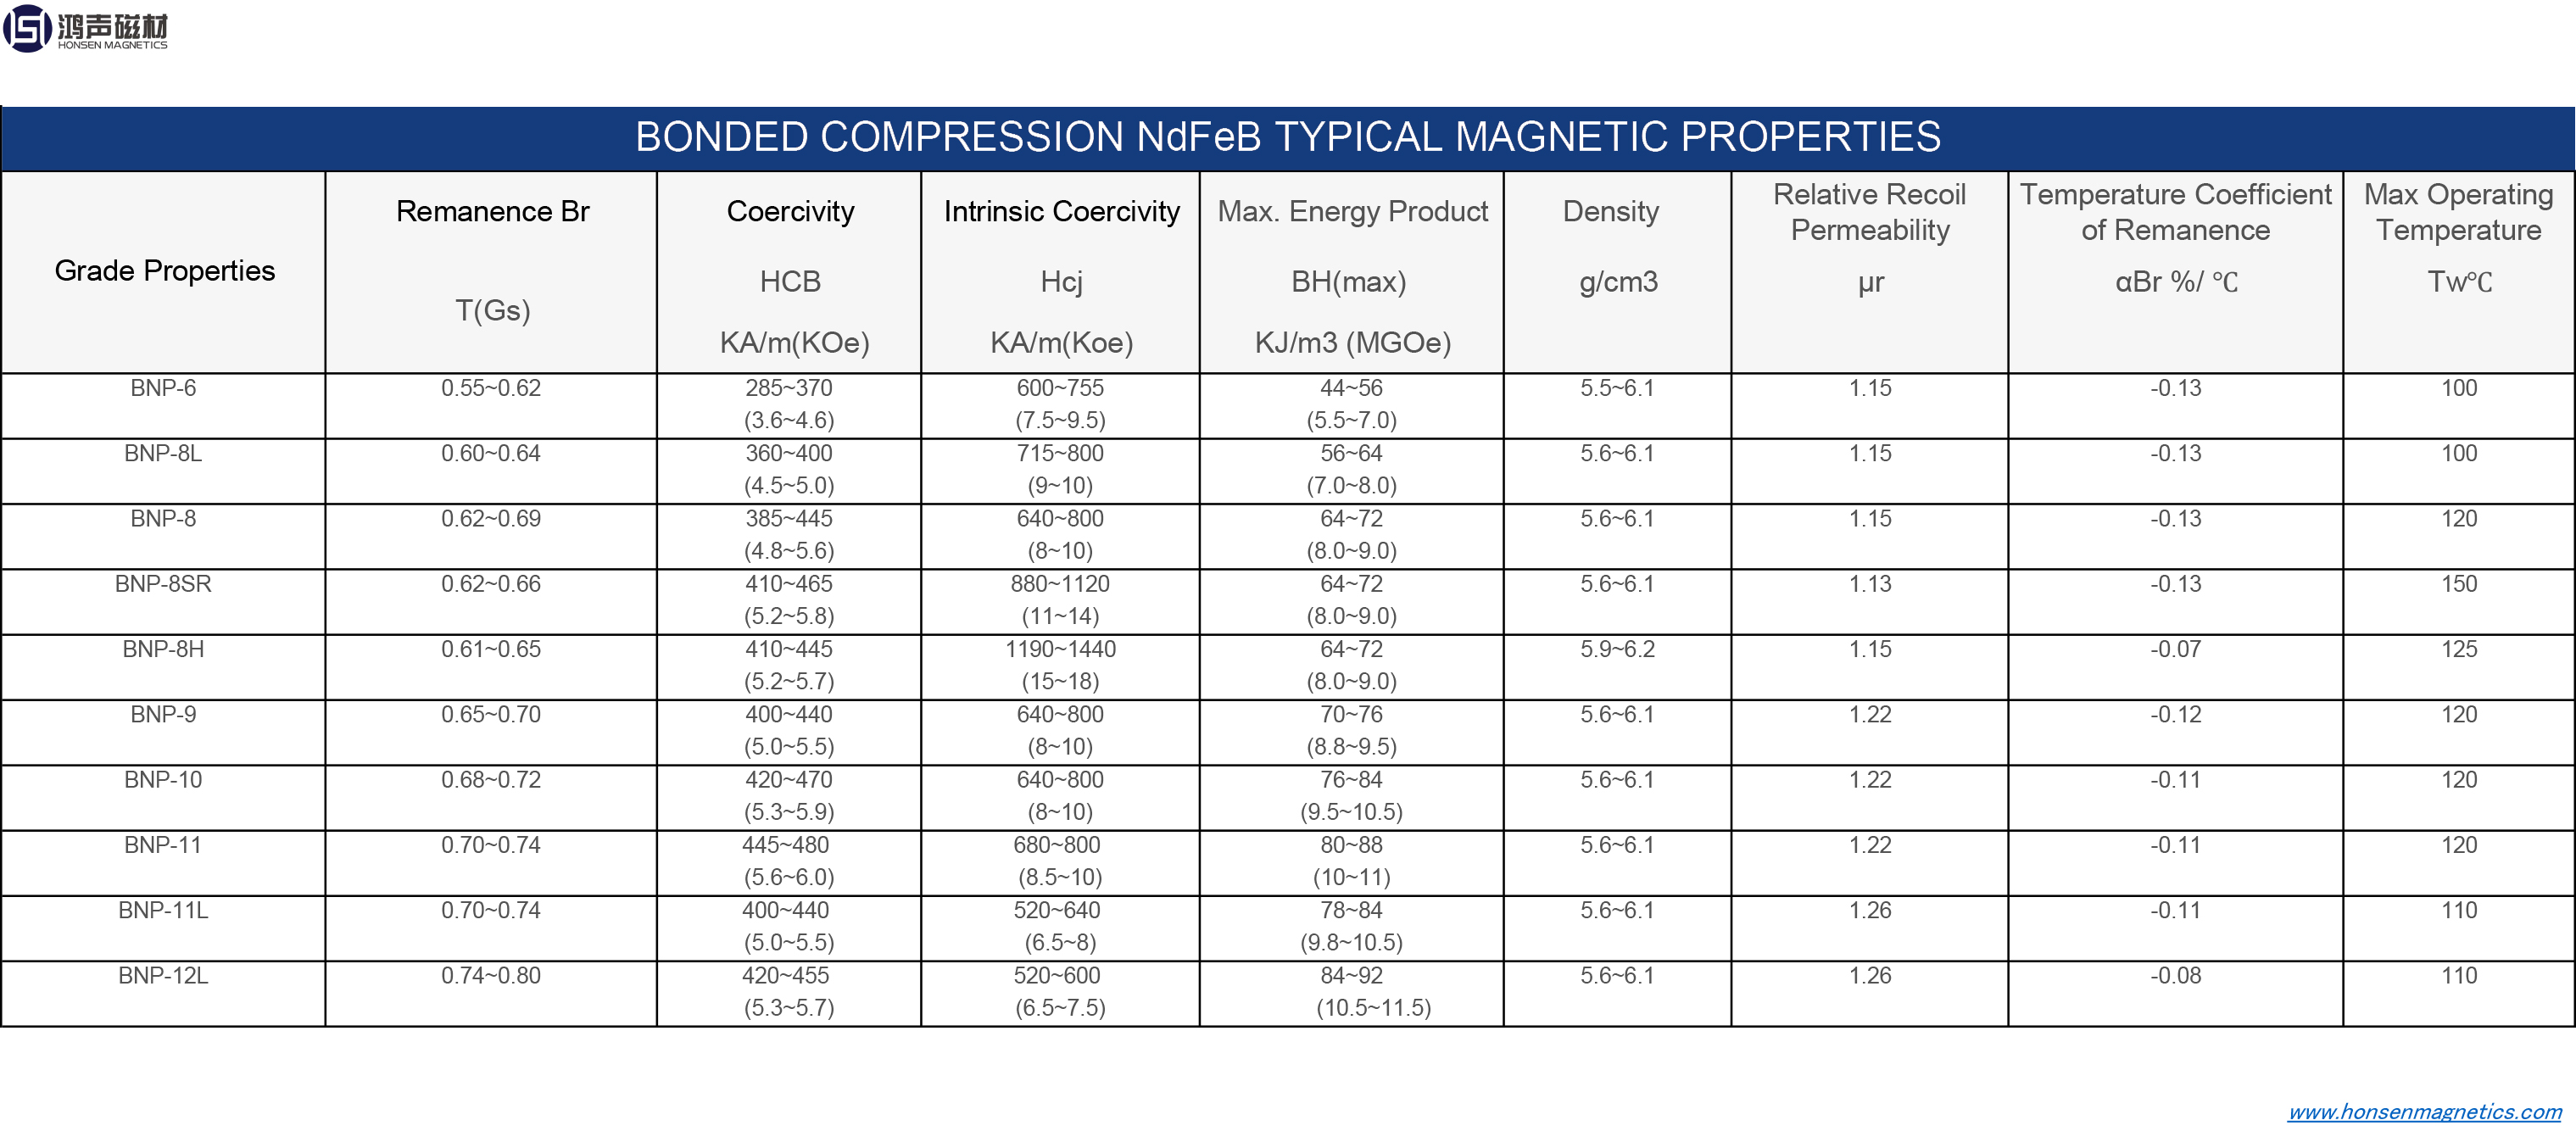 Savienoto kompresijas NdFeB magnētu magnētiskās īpašības